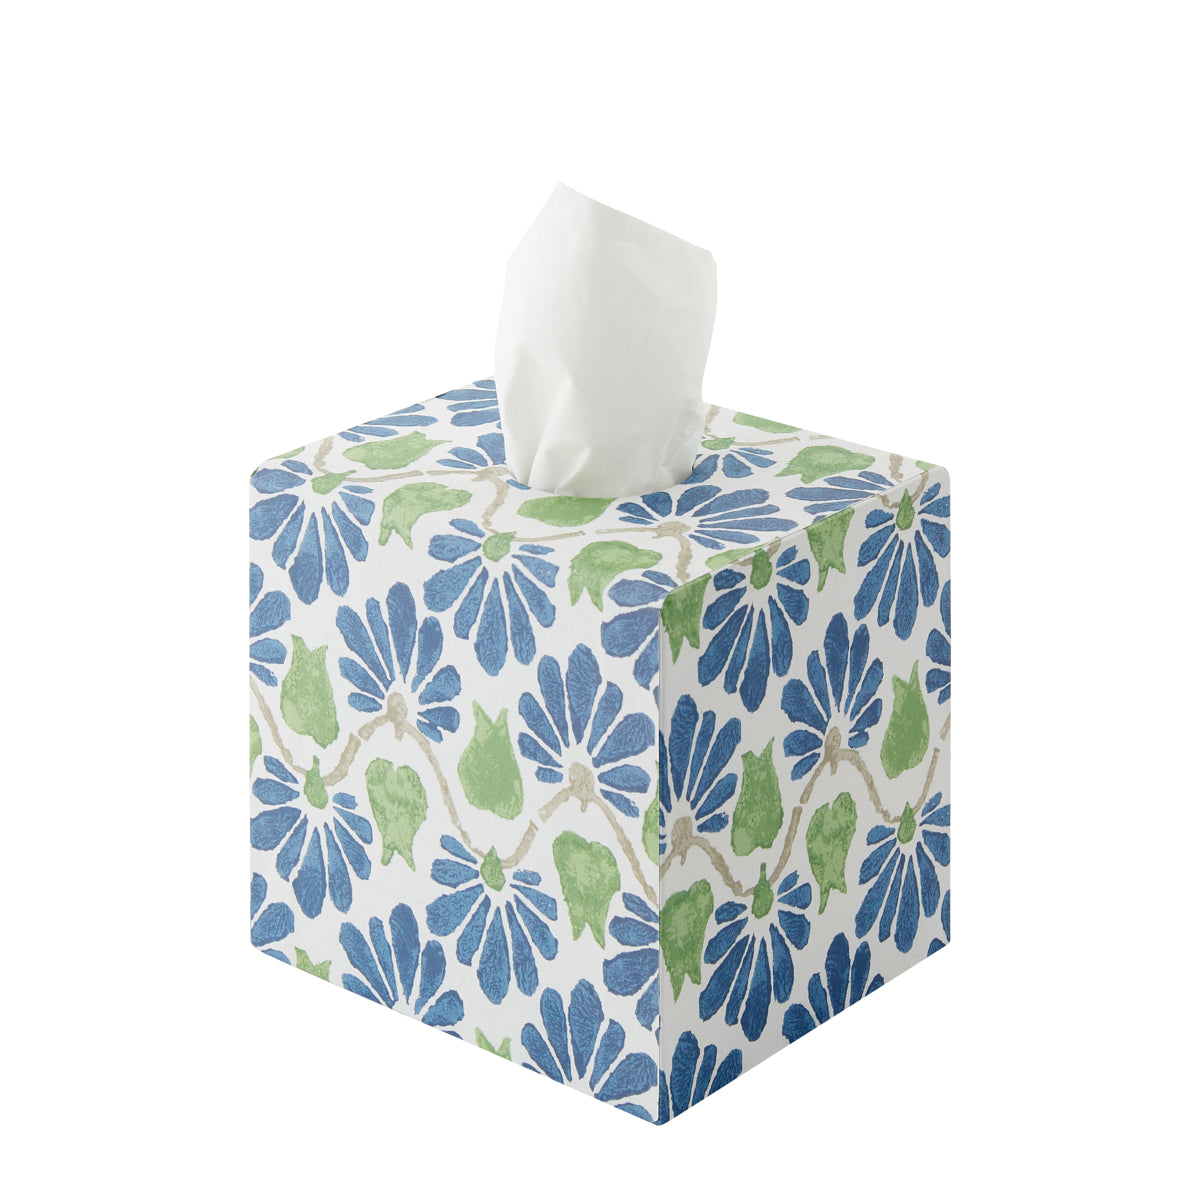 Nina Campbell Tissue Box Ginko Tulips - Blue/Green